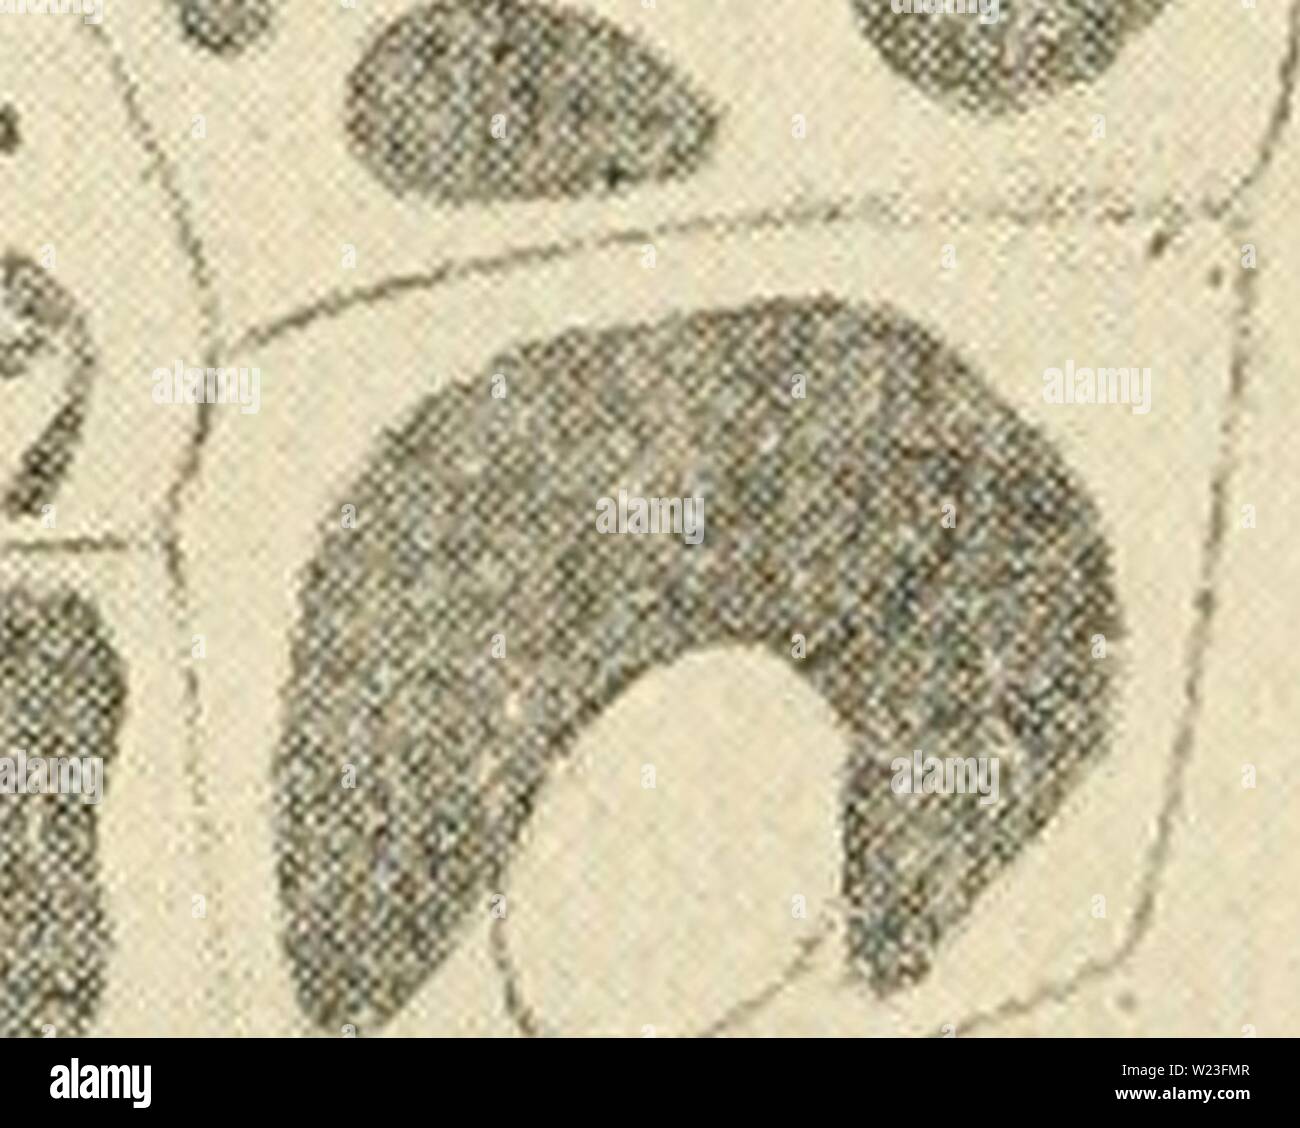 Archiv Bild von Seite 161 des Cytoplasma der Pflanze. Das zytoplasma der pflanzlichen Zelle cytoplasmofplant 00 guil Jahr: 1941 Kapitel XIV ENTWICKLUNG DER VAKUOLENMEMBRAN SYSTEM ersten Etappen in der Entwicklung: - Der Ausgangspunkt der jüngsten Entdeckungen in der Frage der Entwicklung der vakuolenmembran Sys-tem war eine Beobachtung, die von uns auf den Modus der Bildung der Anthocyanfärbung Pigment in den Zähnen von Flugblättern aus der rose bud. Wir haben festgestellt, dass das Pigment beginnt an der Spitze des Zahnes zu bilden. Im Rahmen der Prüfung eines Zahn von der Spitze bis zur Basis, alle Phasen in einem â â¢ MsV 4 f' 3 ii&gt; ich Mi # Stockfoto